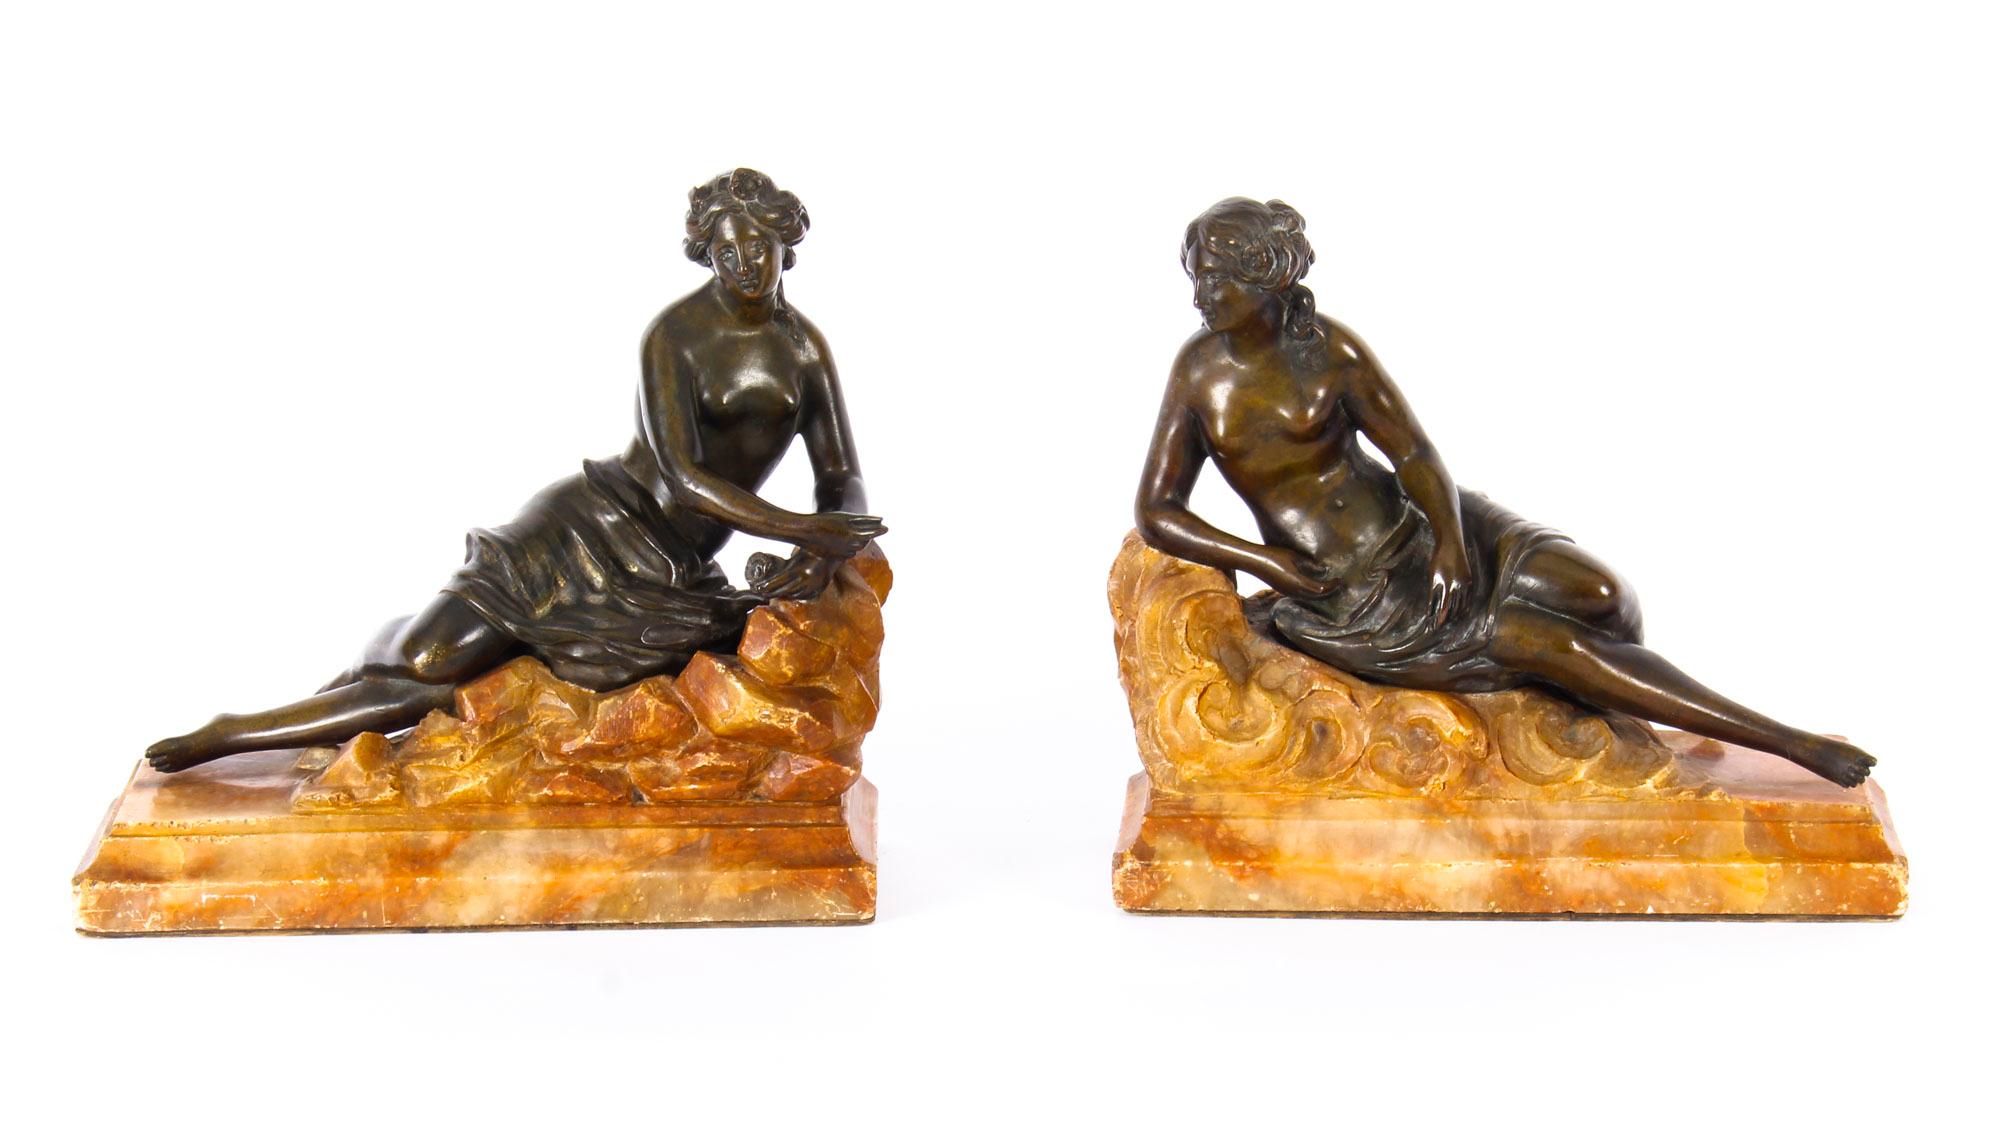 Il s'agit d'une superbe paire de sculptures classiques semi-nues de jeunes femmes allongées en bronze patiné montées sur des bases en marbre sculpté, datant d'environ 1880.

Ces figures en bronze exceptionnellement sculptées représentent deux belles